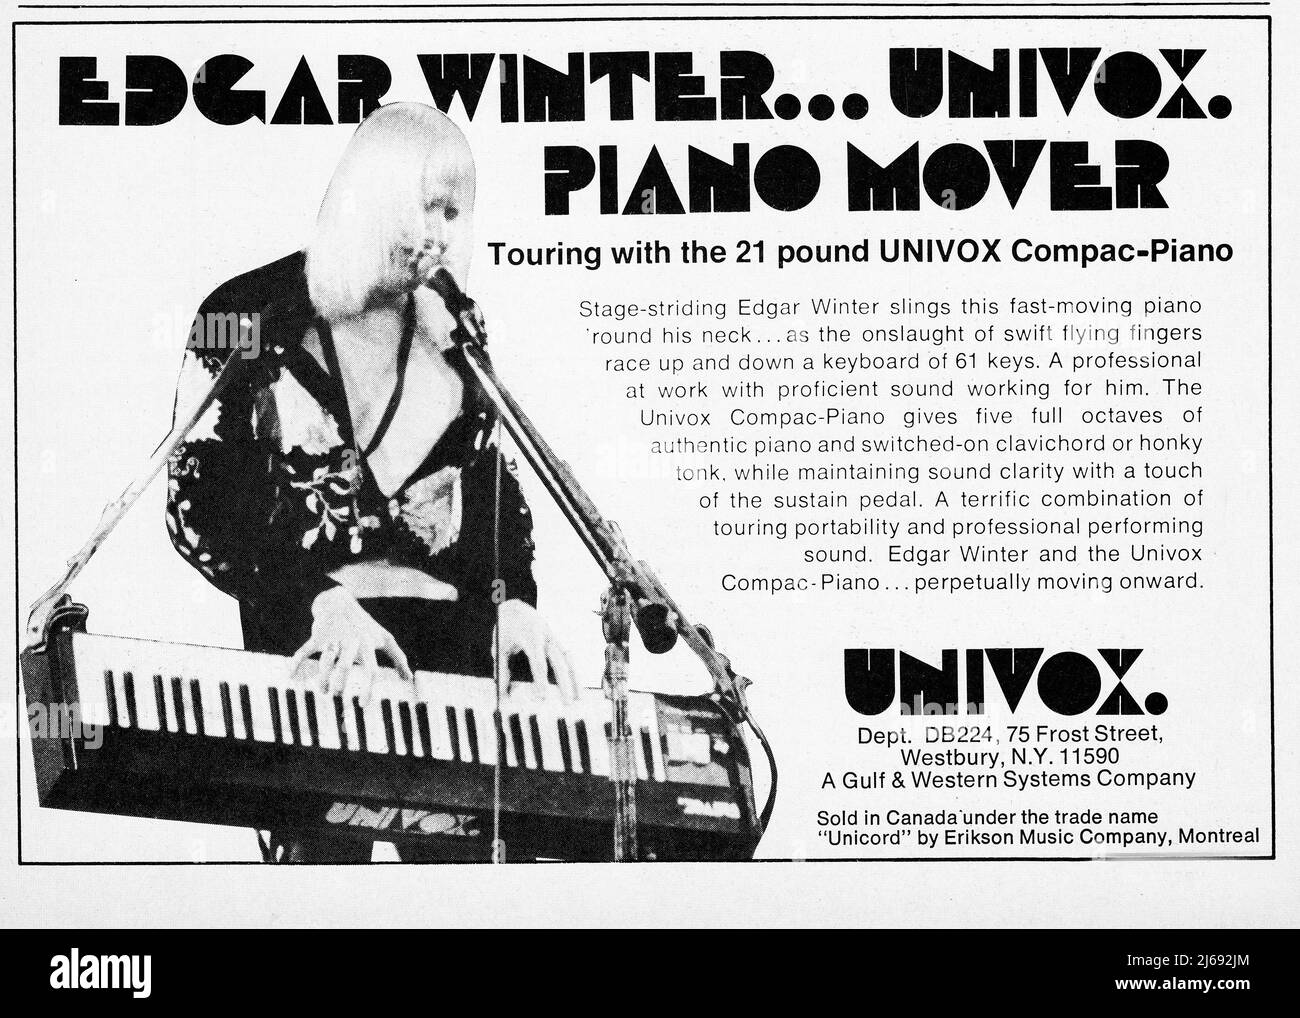 Un annuncio per l'Univox Compac-piano con il leggendario chitarrista blues rock, Johnny Winter. Era una delle prime tastiere elettroniche portatili e Winter ha inventato la cinghia in modo da giocarla in piedi. Foto Stock